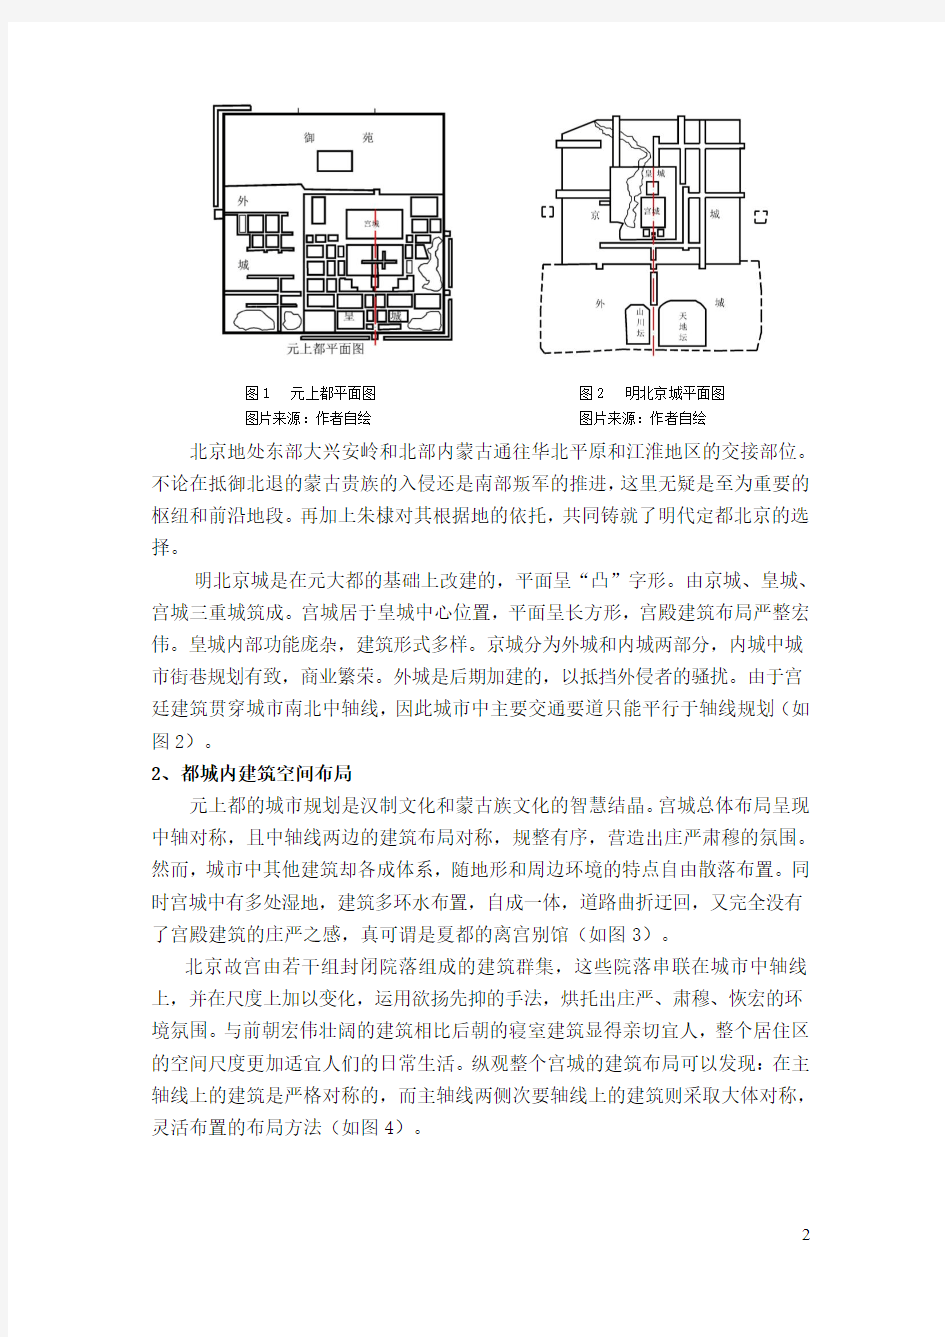 浅析元上都与北京故宫发展中传统文化理念对当代建筑的启示